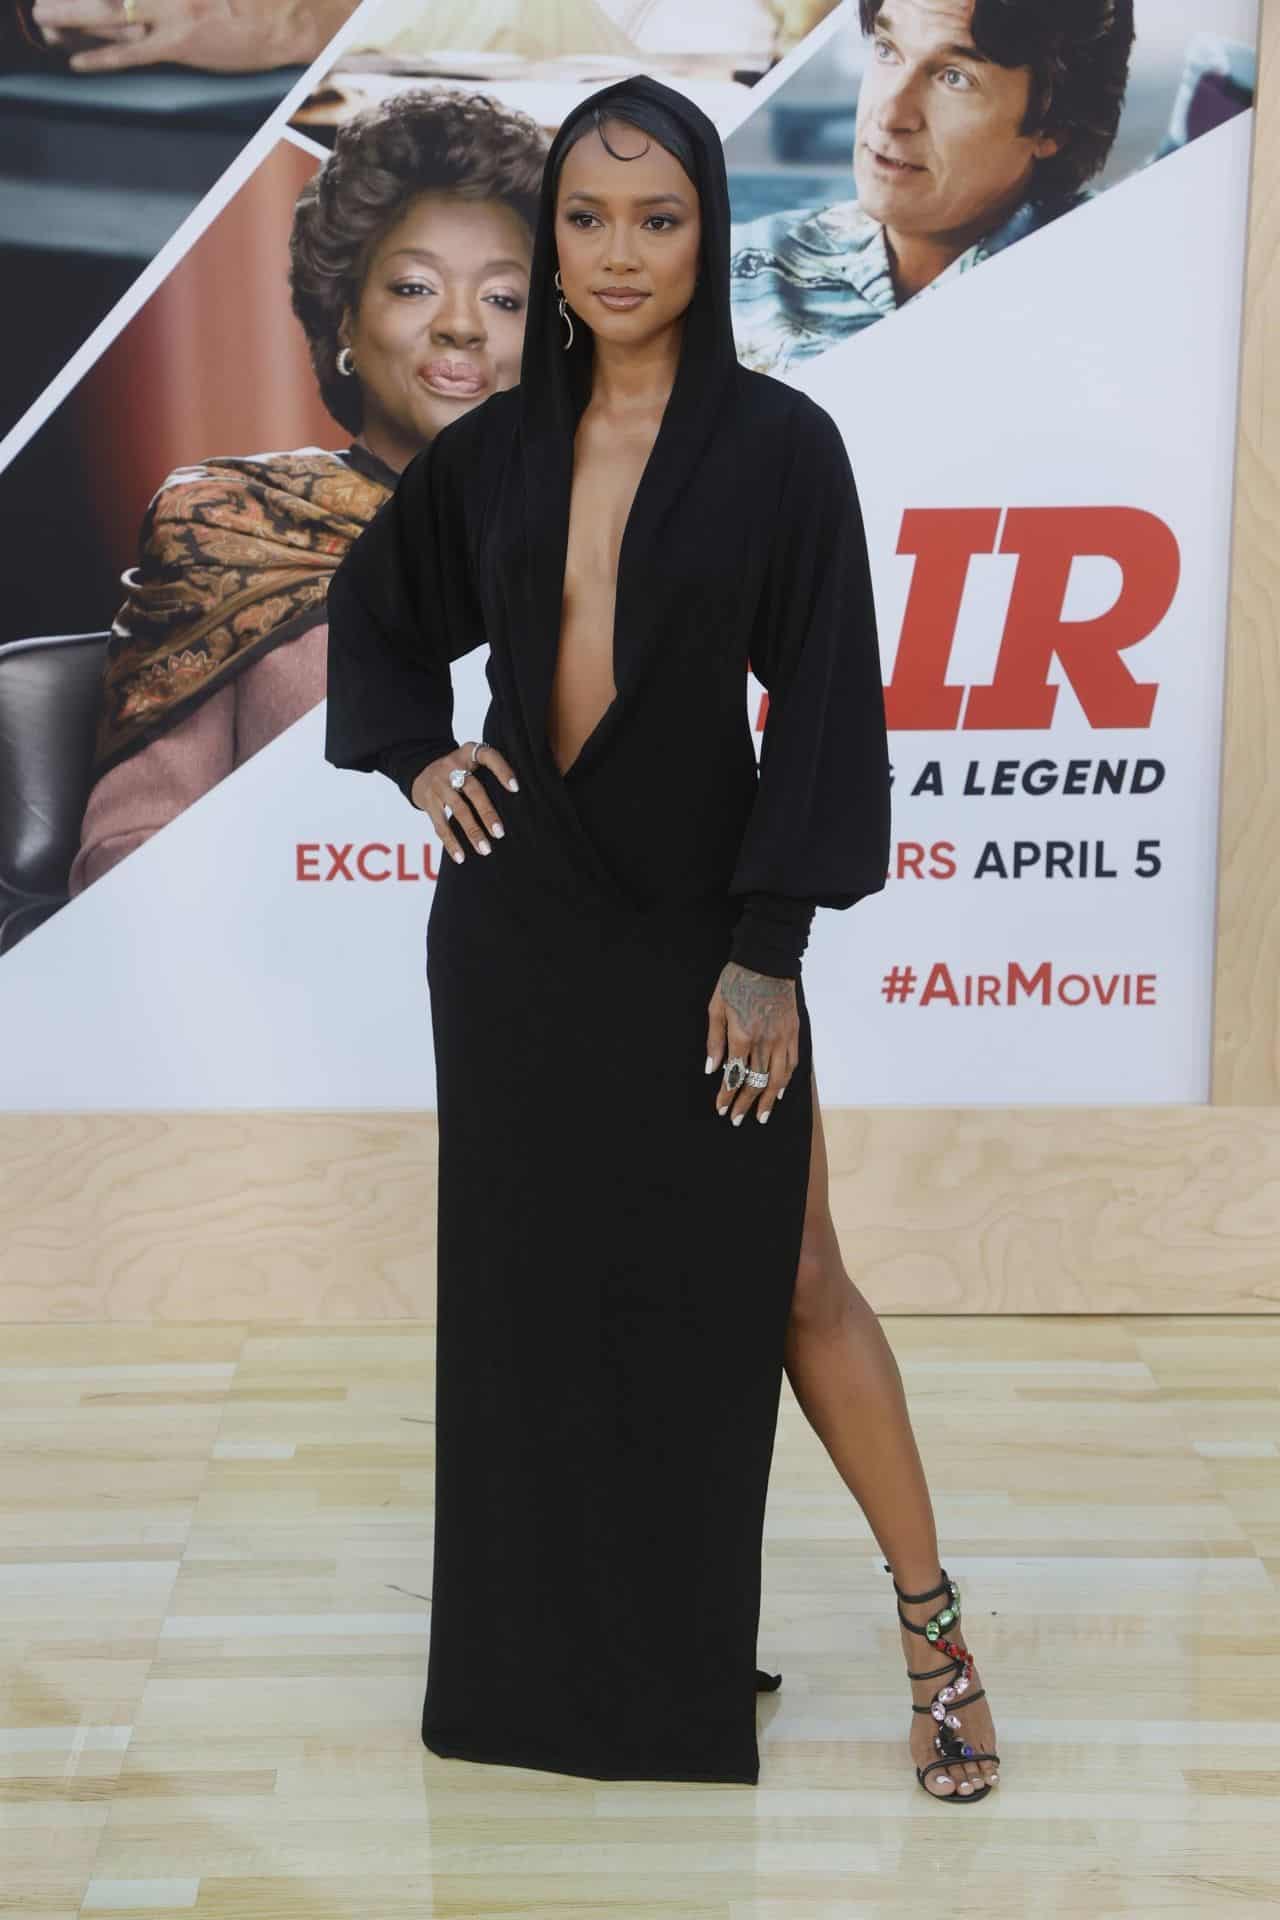 Karrueche Tran Dresses Up in Hooded Dress for "Air" Premiere in LA